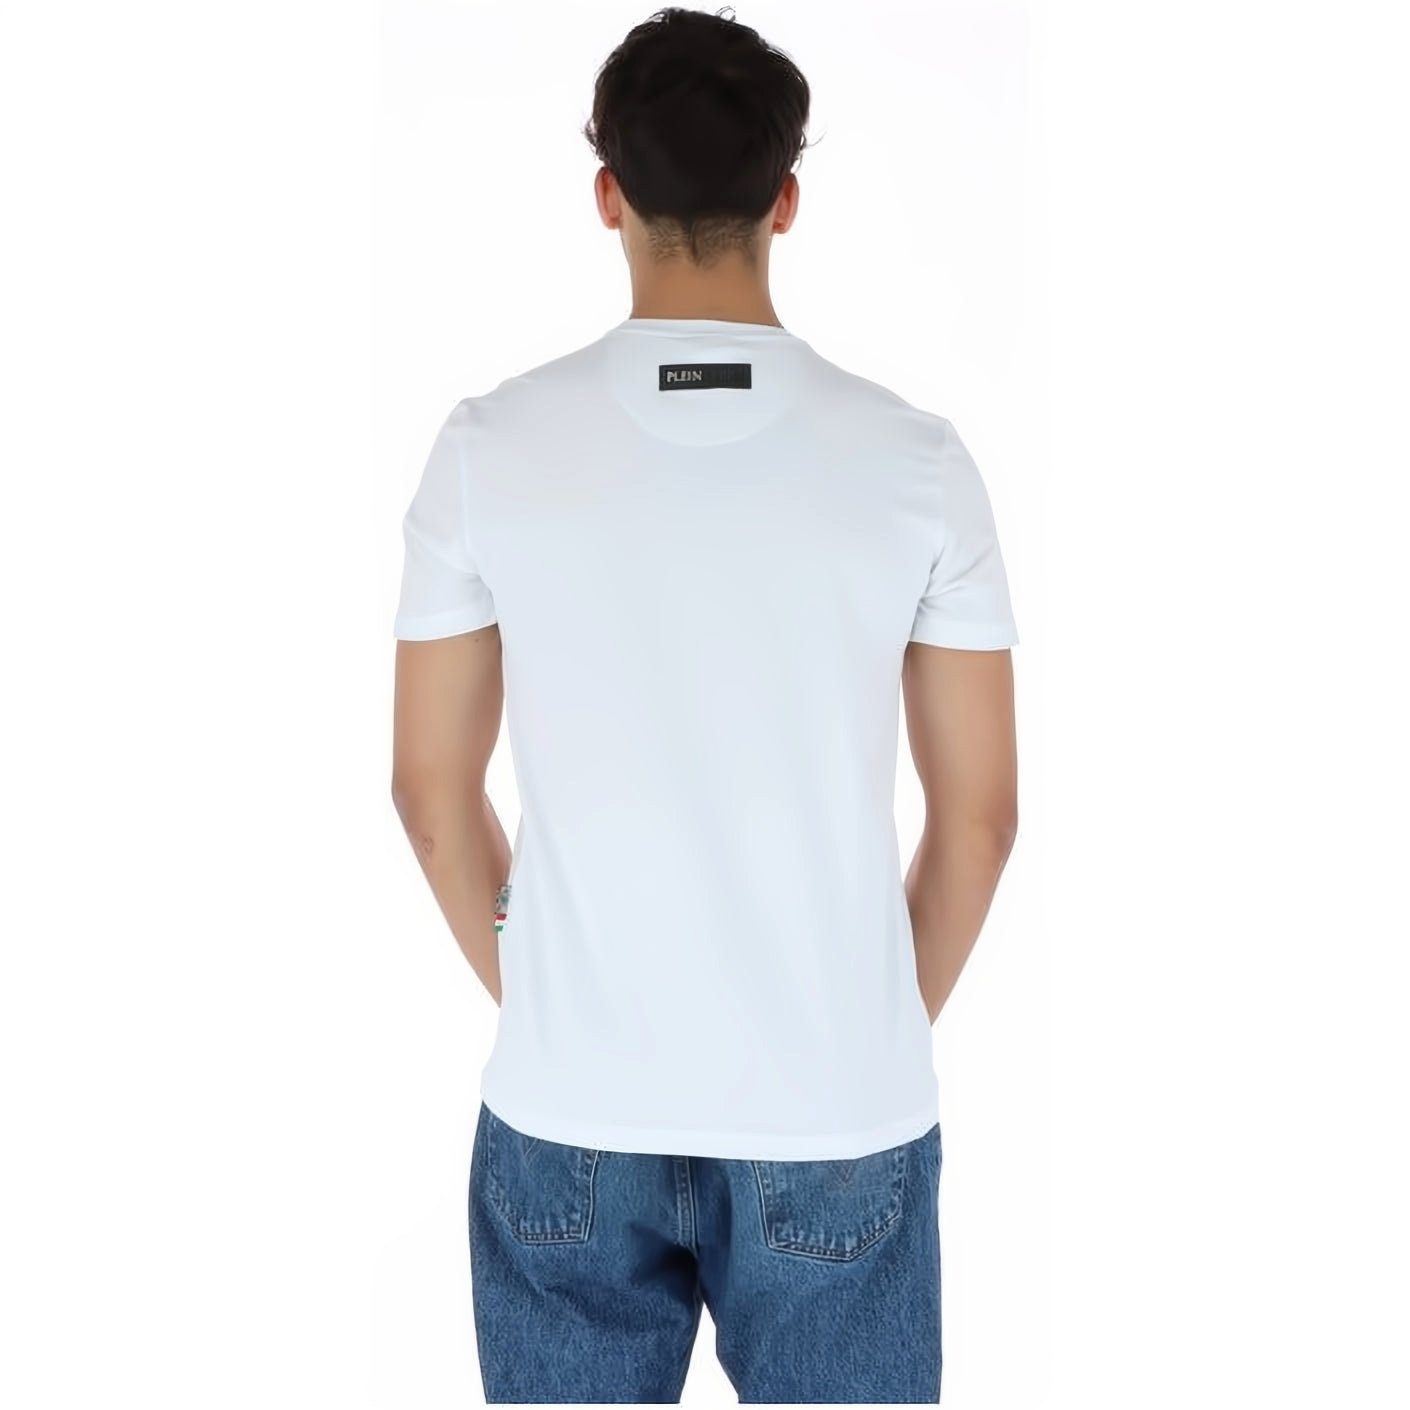 NECK Look, T-Shirt ROUND SPORT vielfältige PLEIN hoher Tragekomfort, Farbauswahl Stylischer